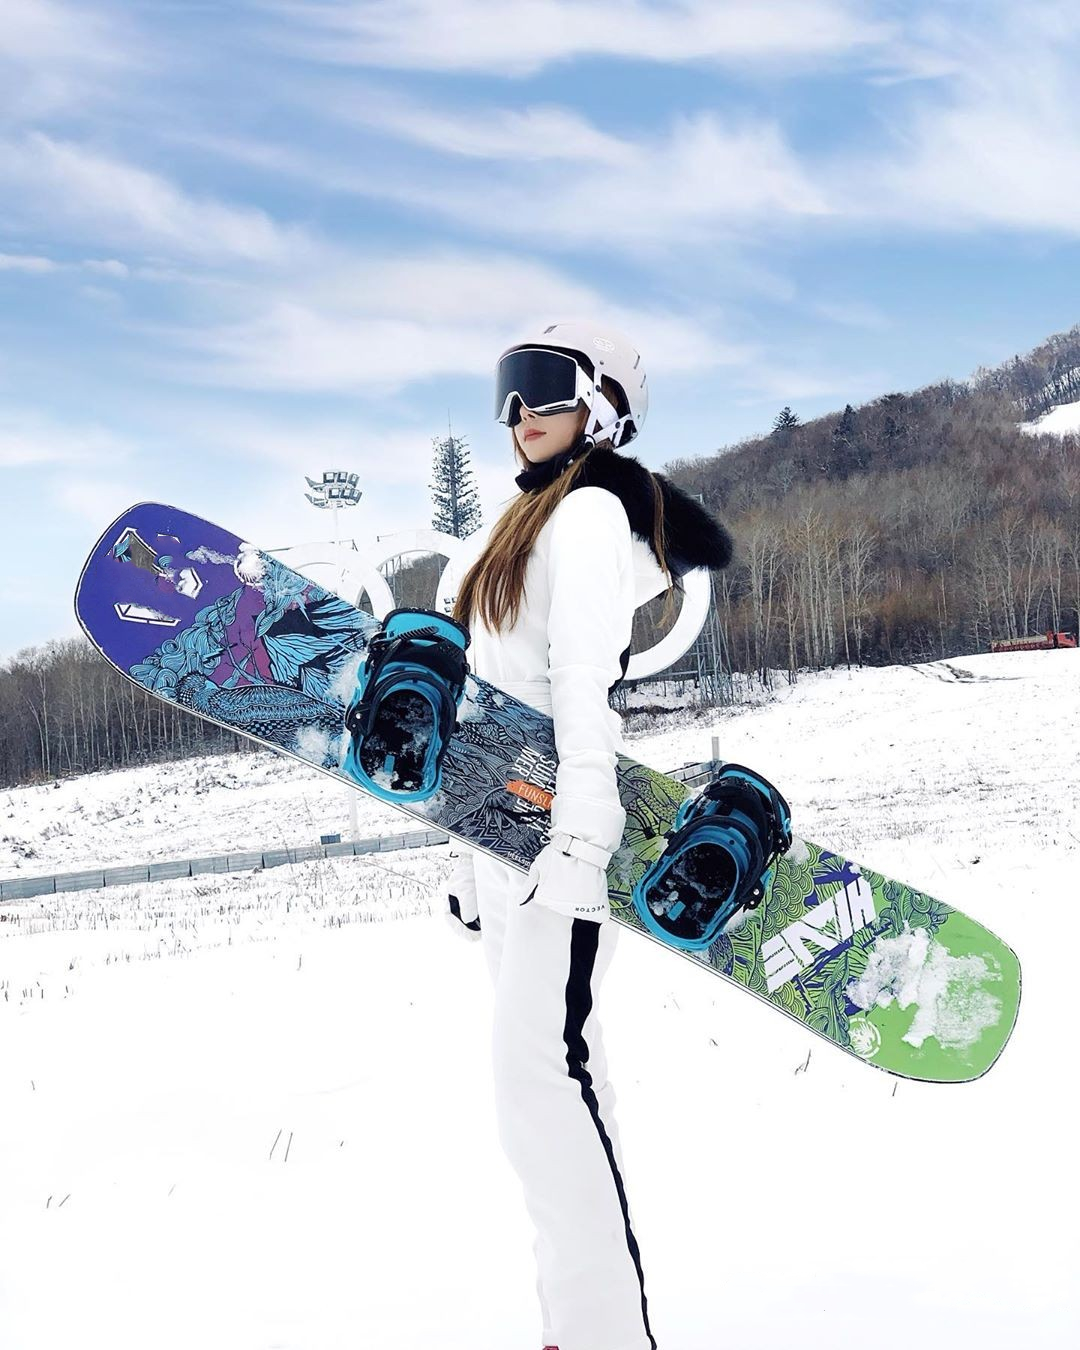 滑雪运动美女达人卡丽娜的时尚写真照,美丽动人气质佳